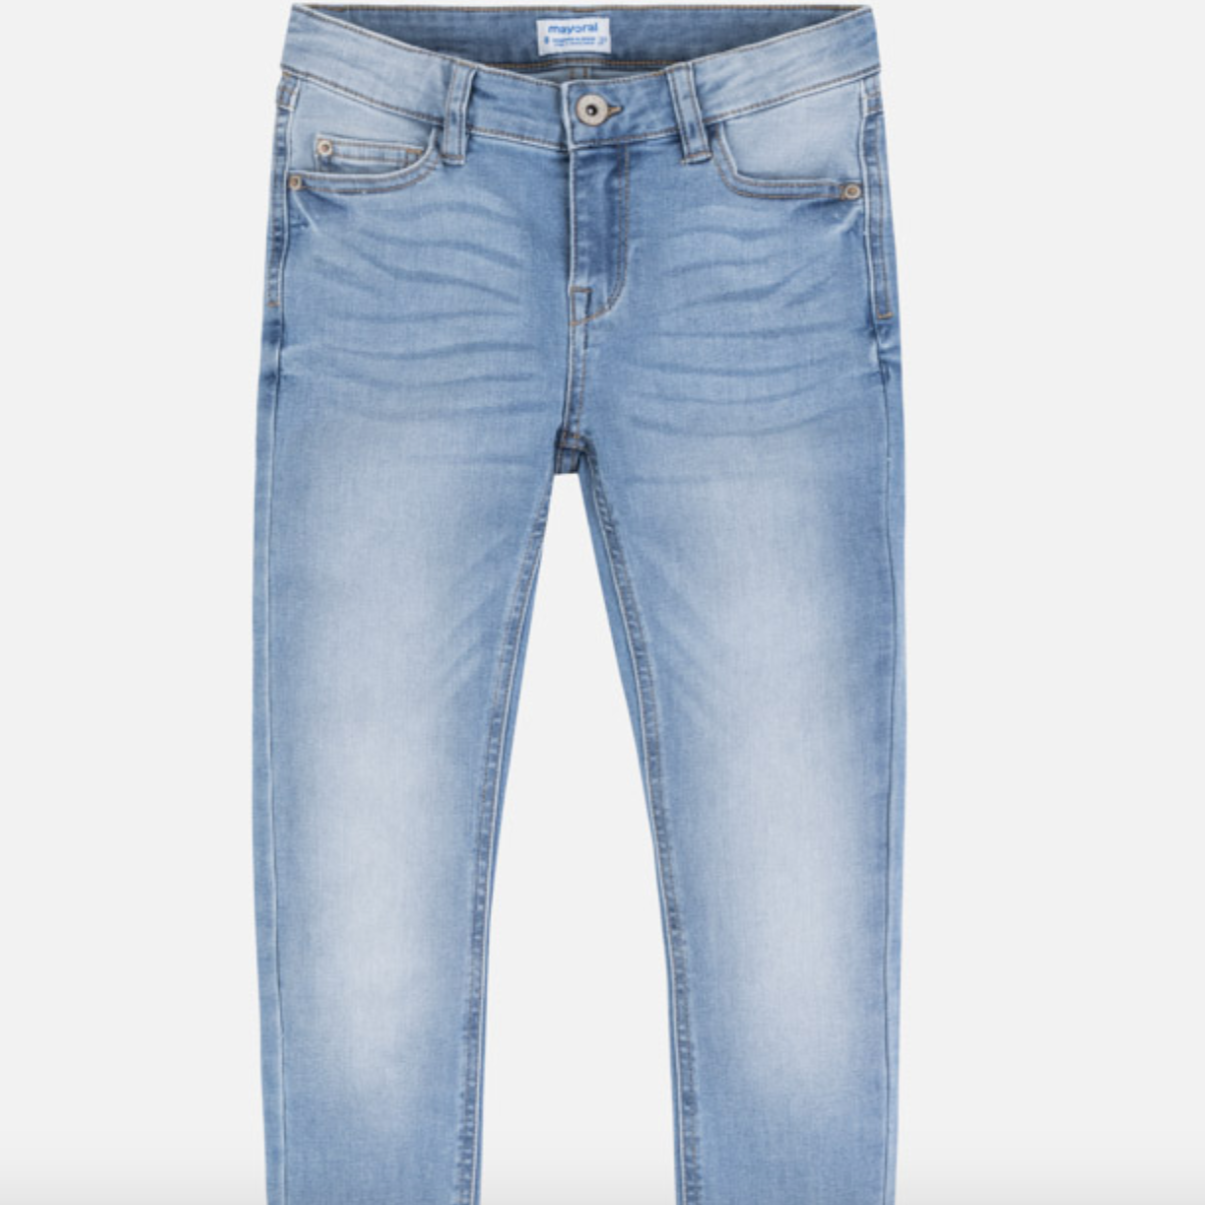 Pantalón de Mezclilla Azul Claro Slim TPS – Mollerclothing